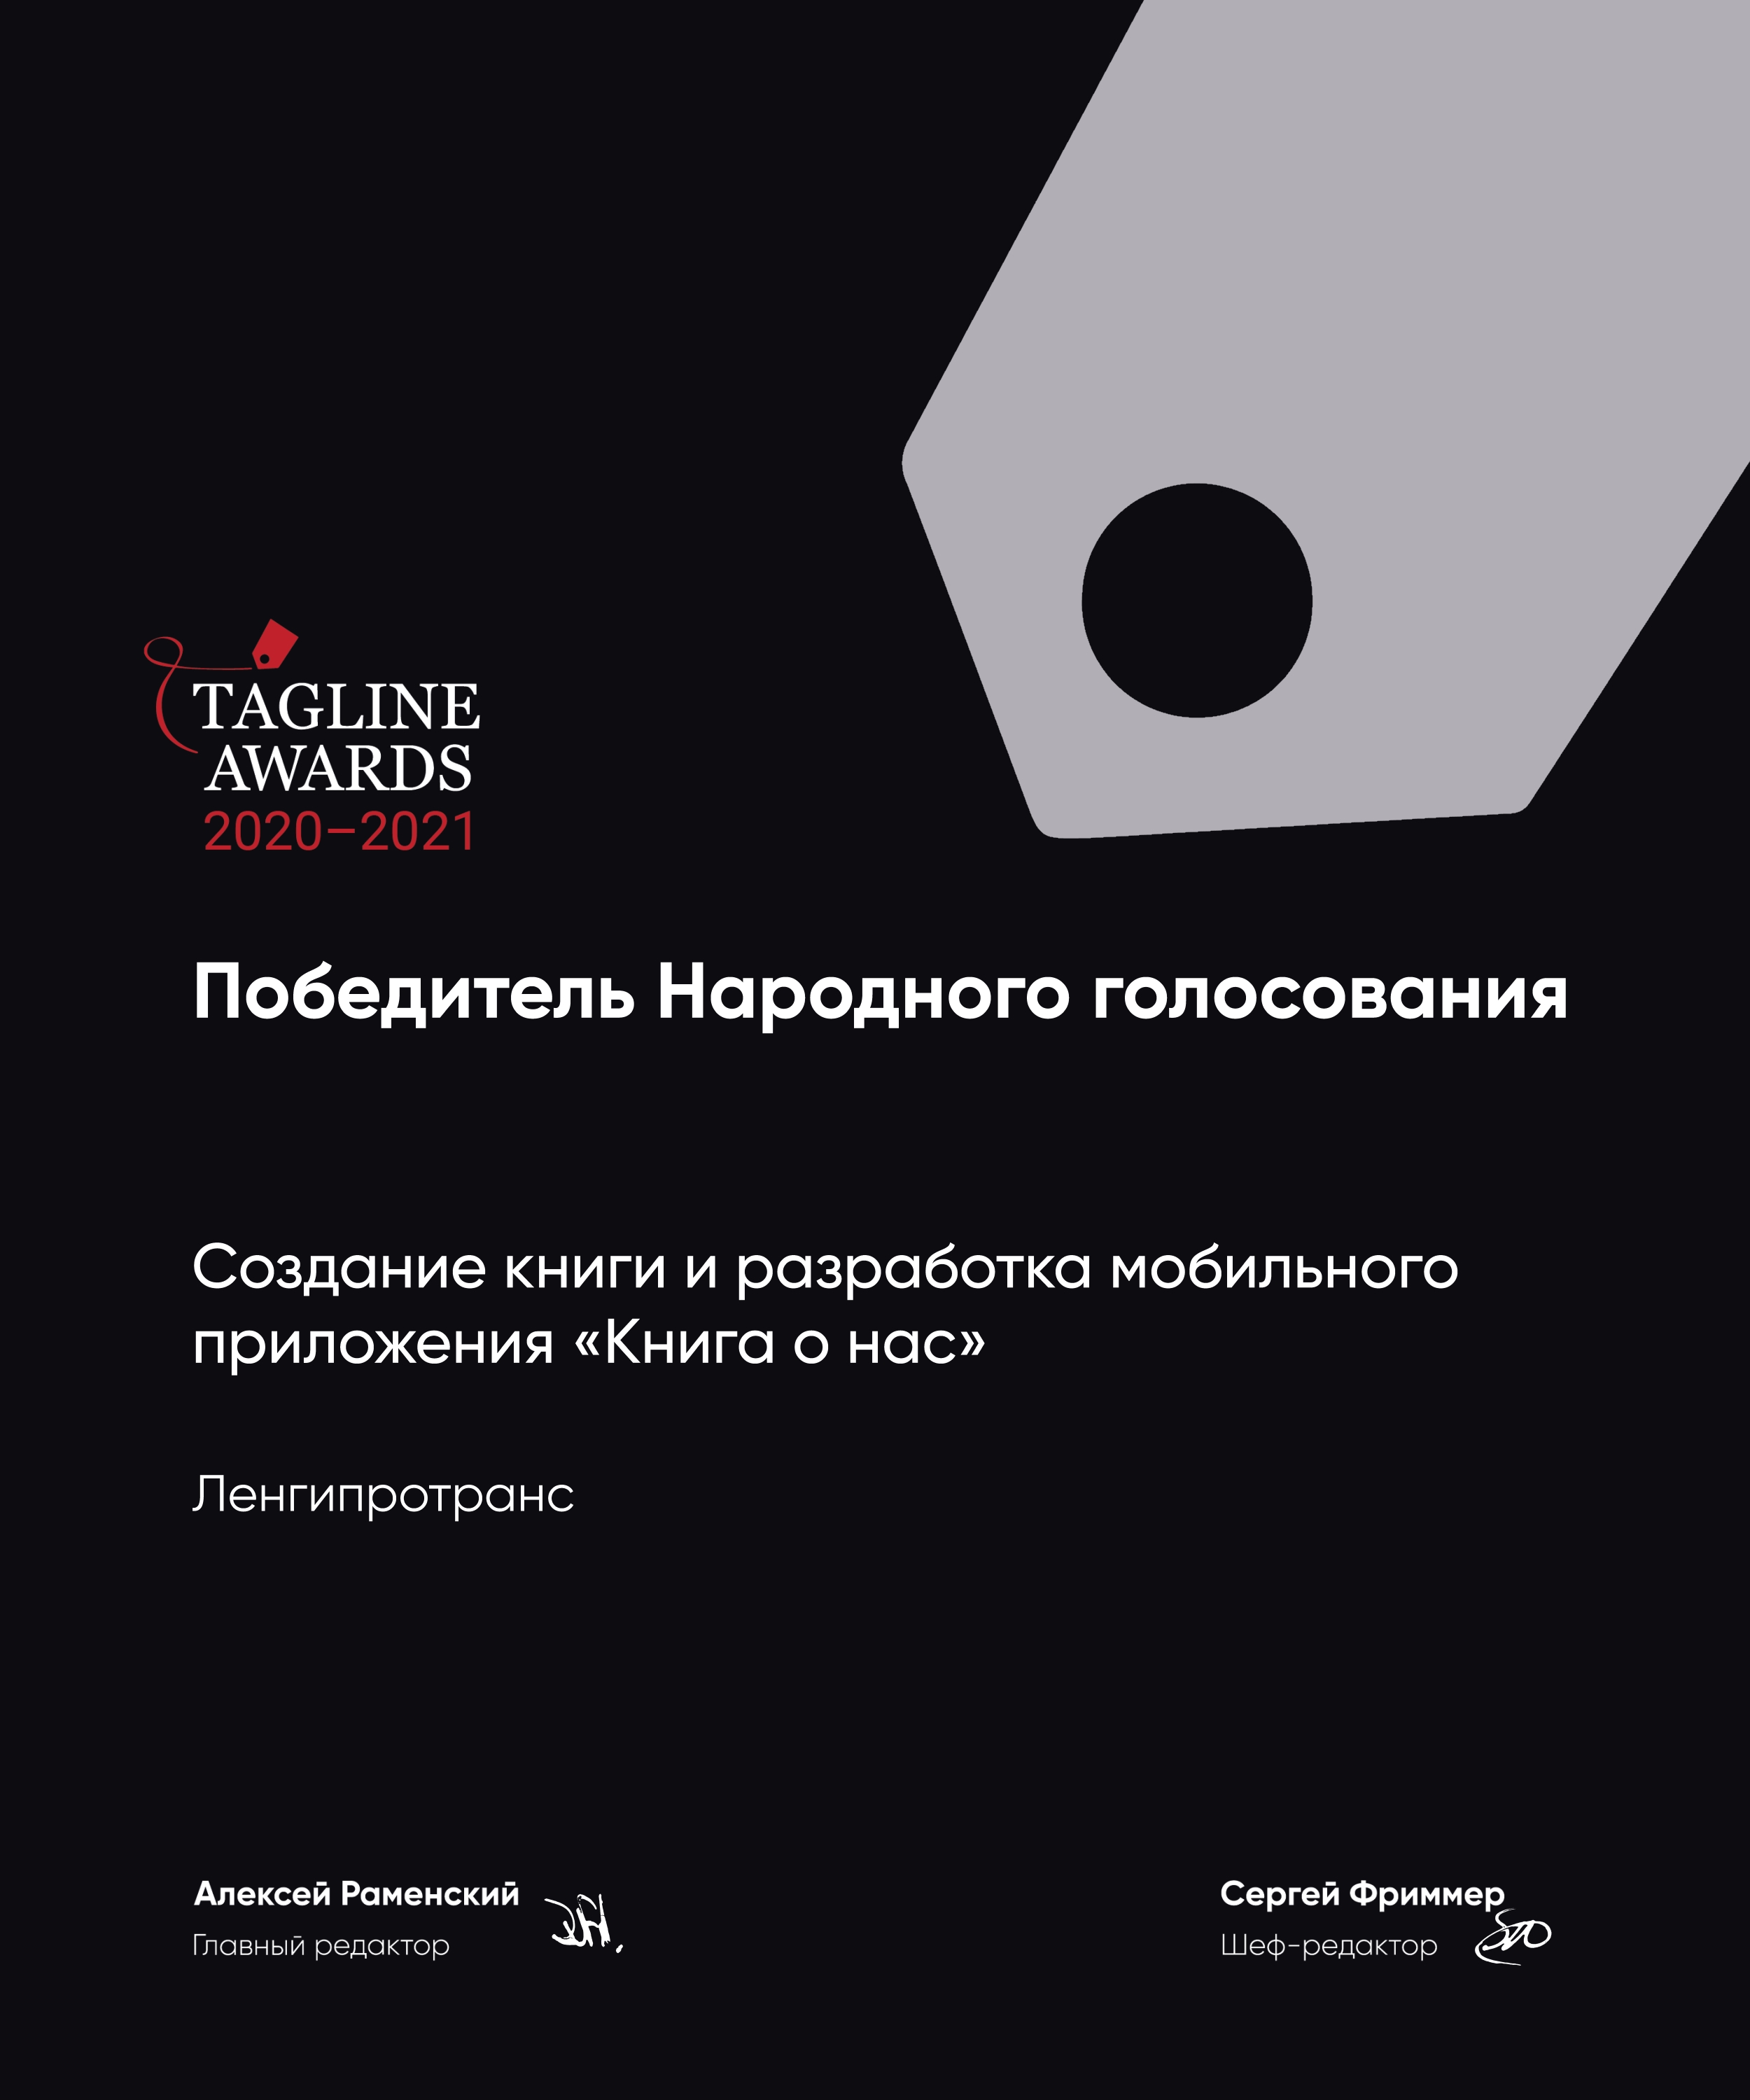 Компания — призер Tagline Awards 2020–2021